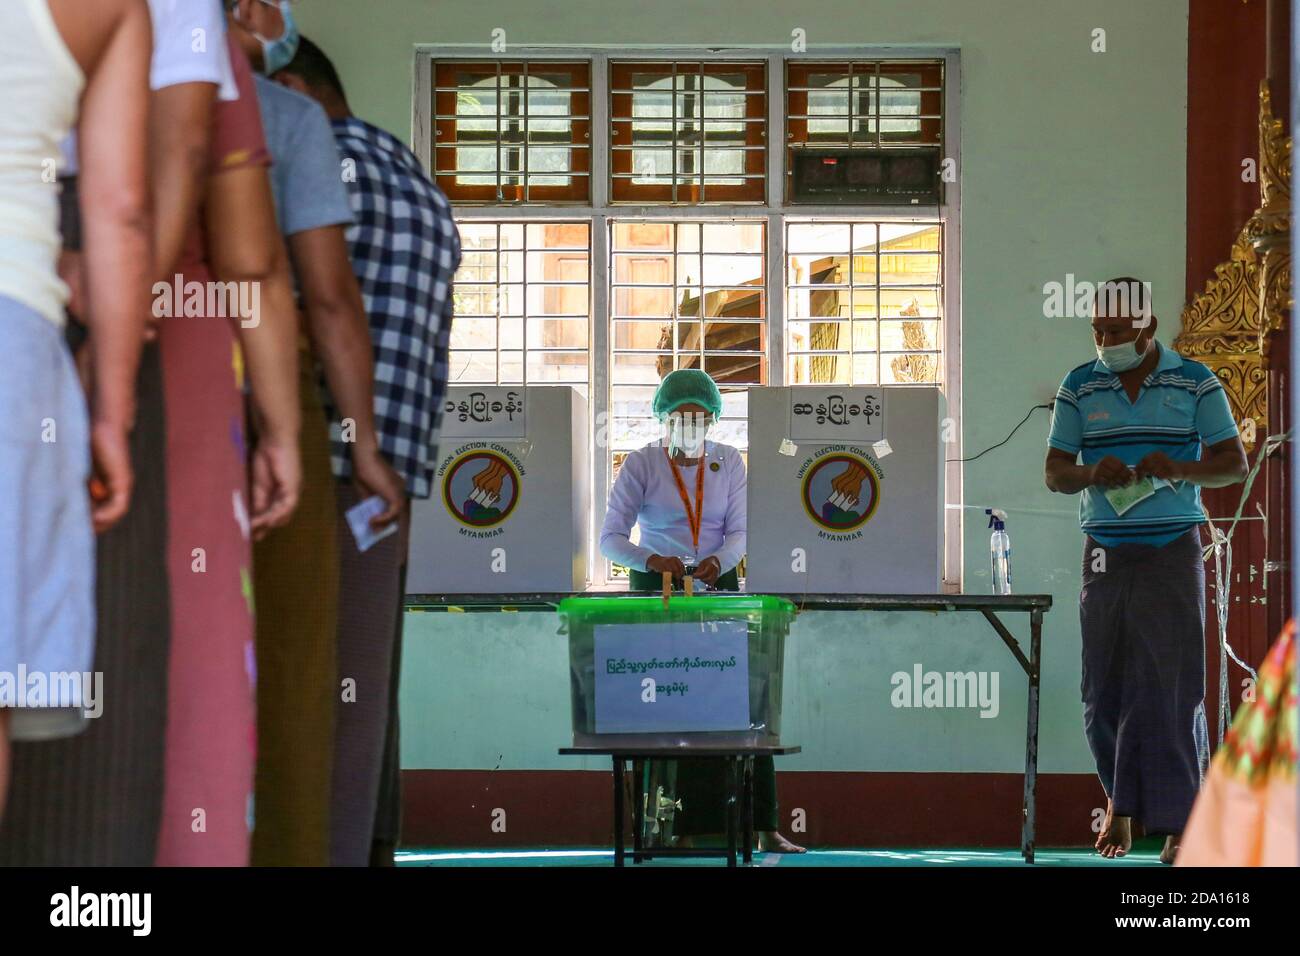 Mandalay, Myanmar. 08 novembre 2020. Un homme sort du bureau de vote après qu'il ait terminé son vote.les citoyens du Myanmar ont voté lors de la deuxième élection démocratique depuis la fin du régime militaire, Aung San Suu Kyi devant remporter l'élection. Crédit : SOPA Images Limited/Alamy Live News Banque D'Images